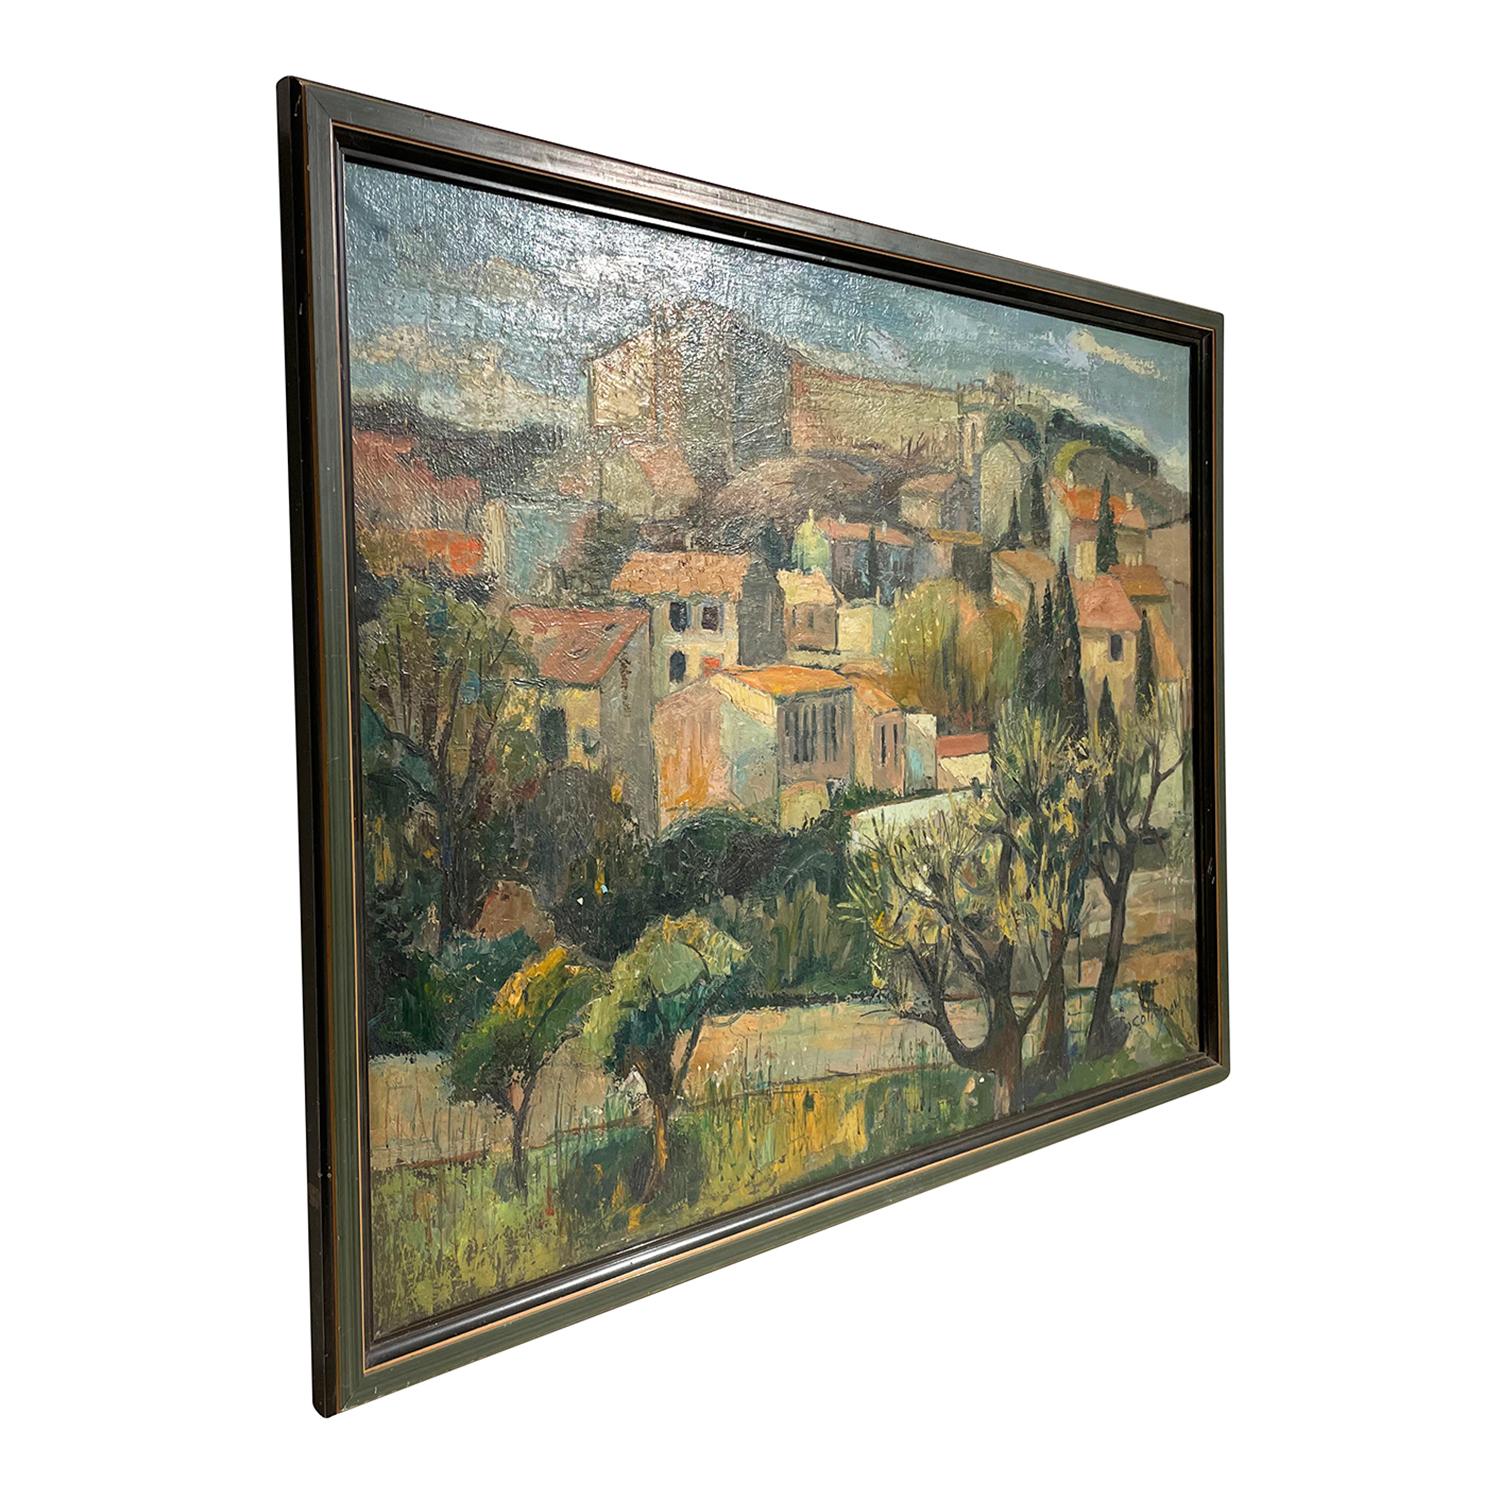 Un paysage provençal français ancien vert foncé, jaune, peinture à l'huile sur toile, représentant une journée ensoleillée dans une petite ville, très probablement en Provence, peint par Eugène Colignon dans un cadre en bois original fait à la main,